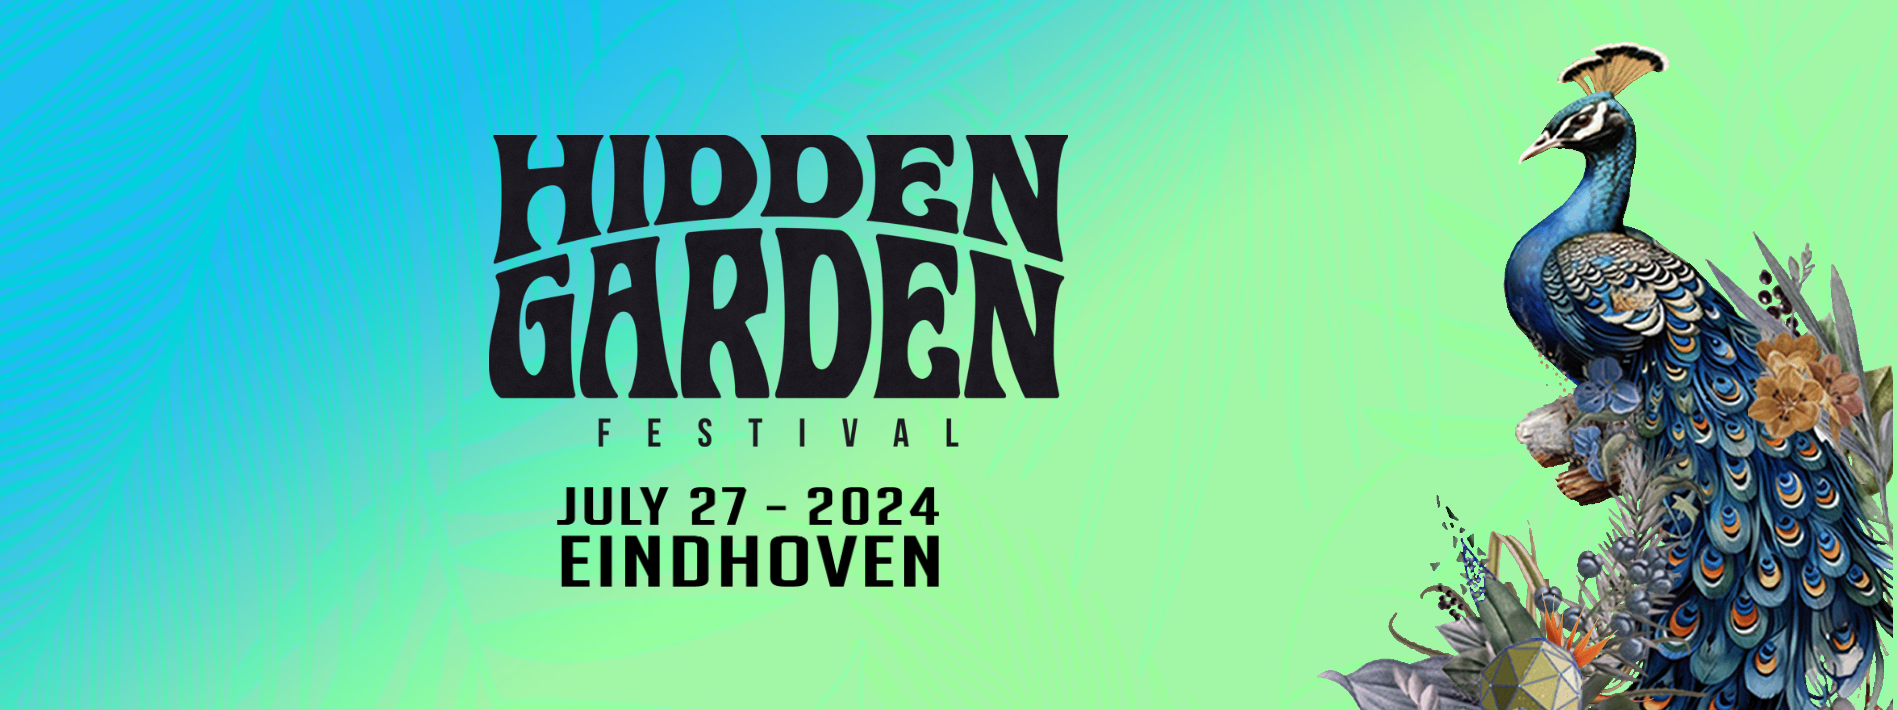 Gratis tickets voor Hidden Garden 2024 bij HiFi en Audio